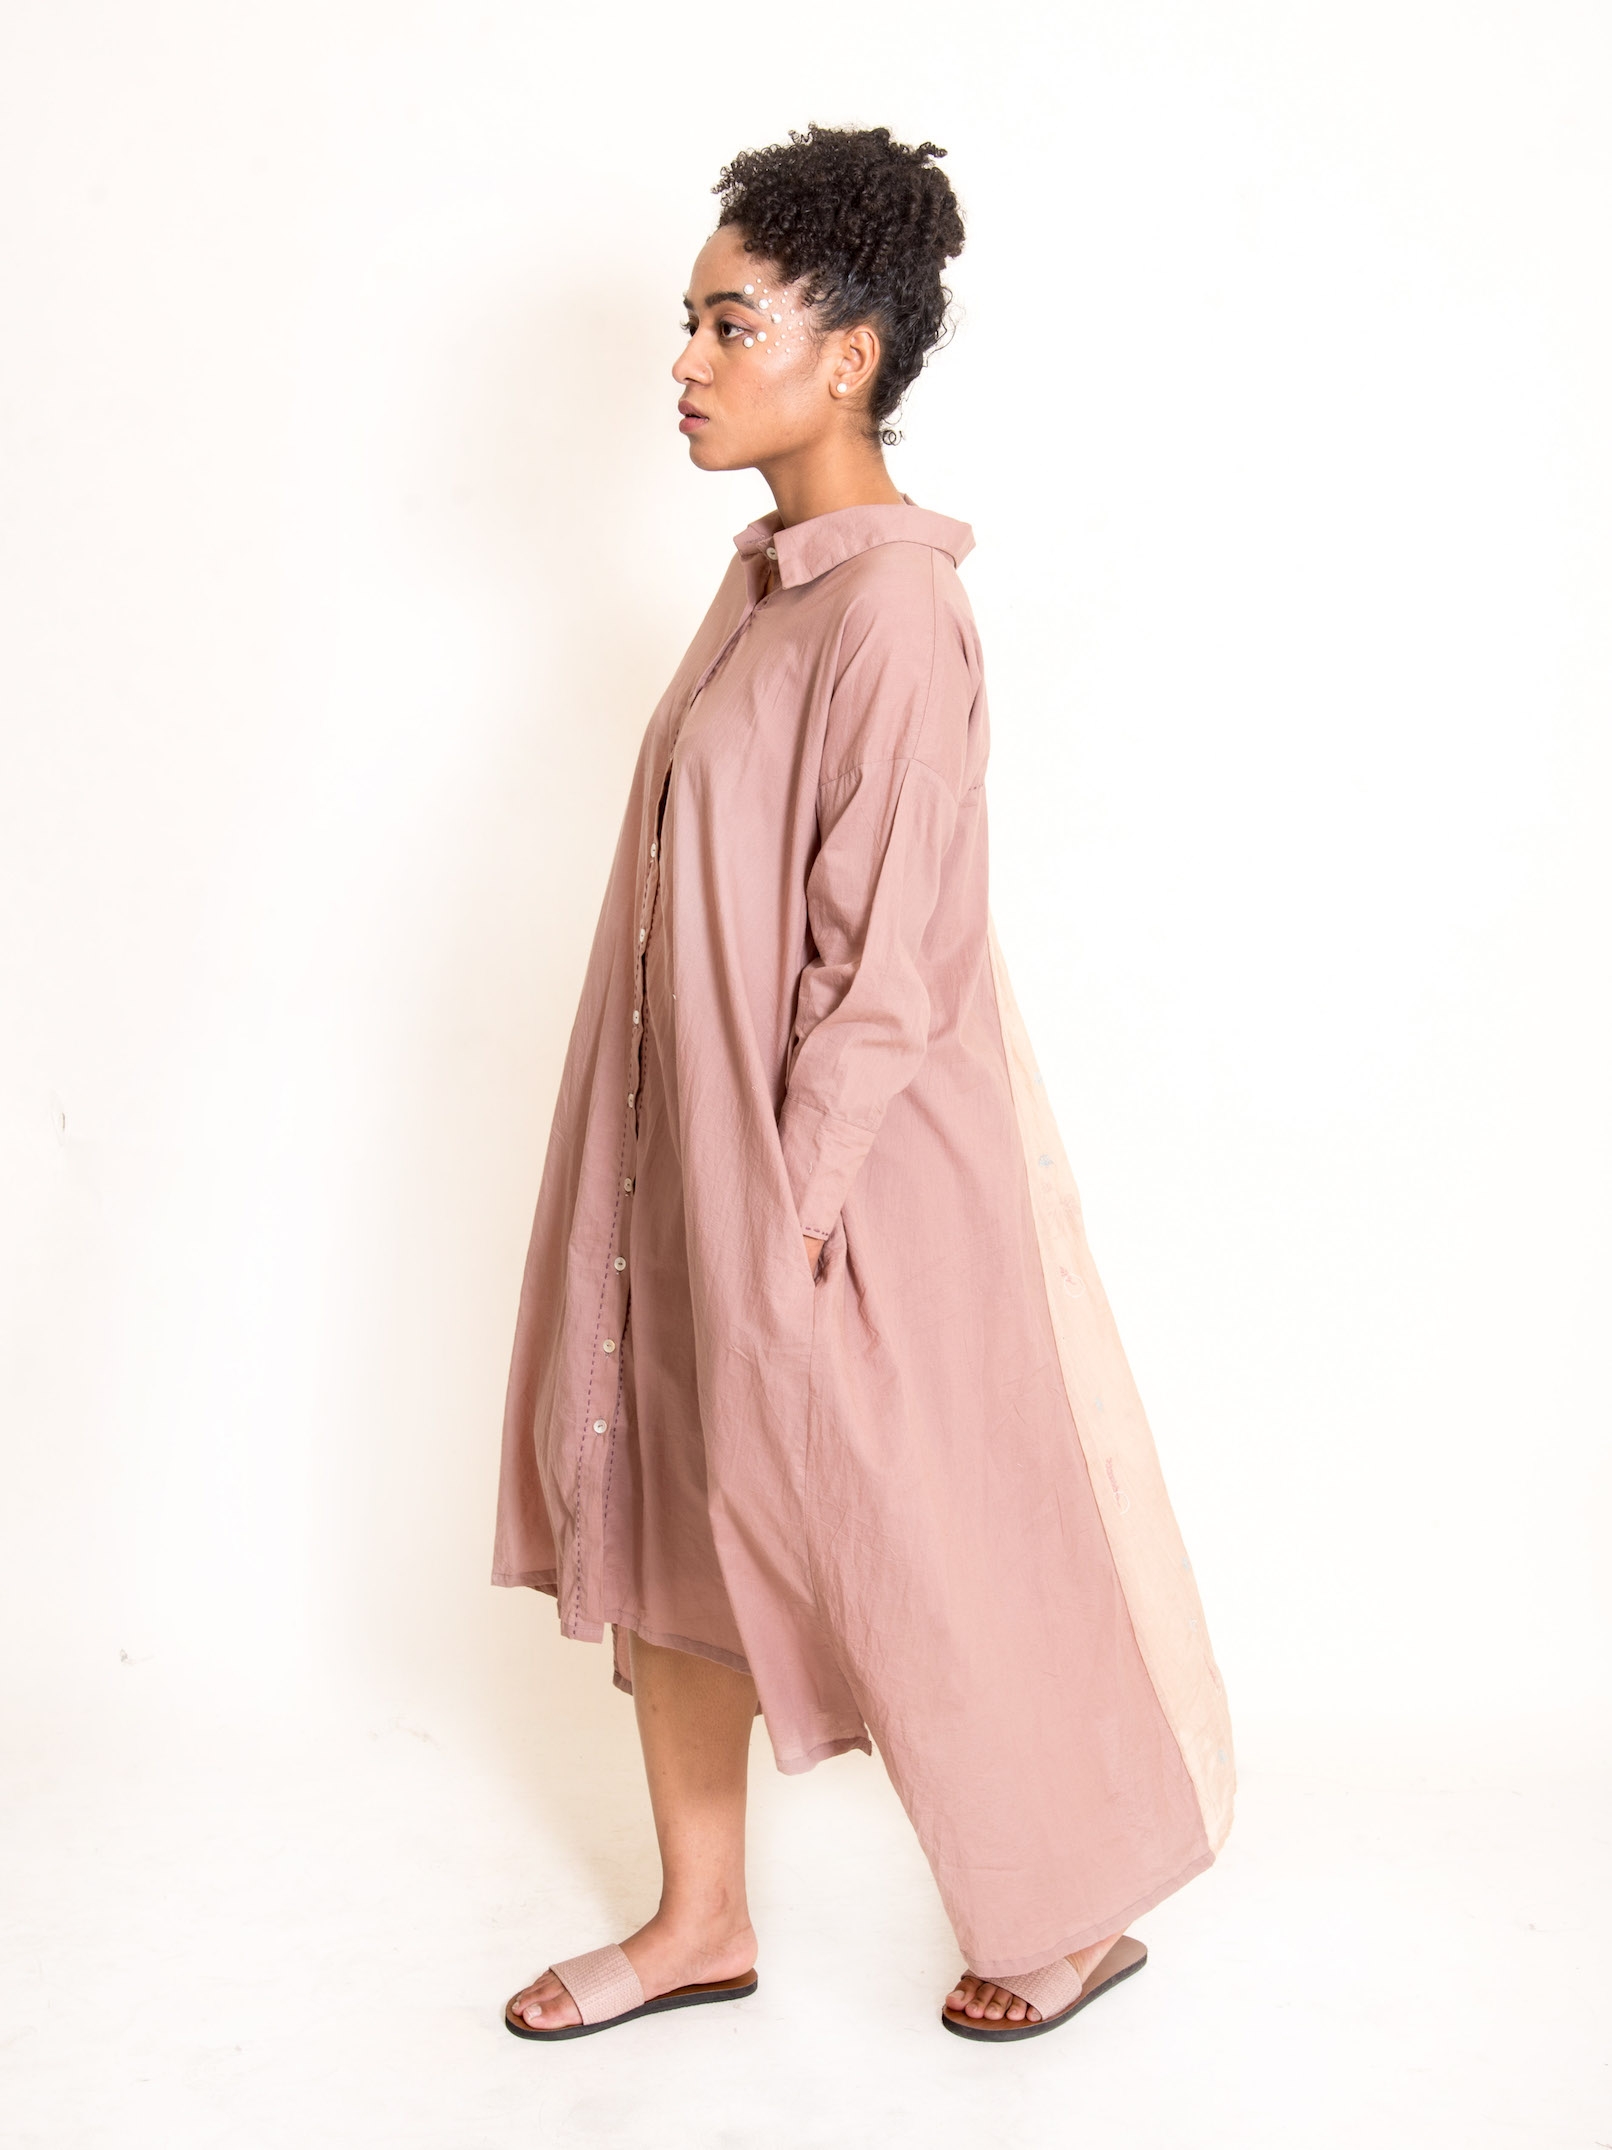 OurDve | OurDve Cotton Midi Dress - Poc Dress - Ash Pink - Free Size